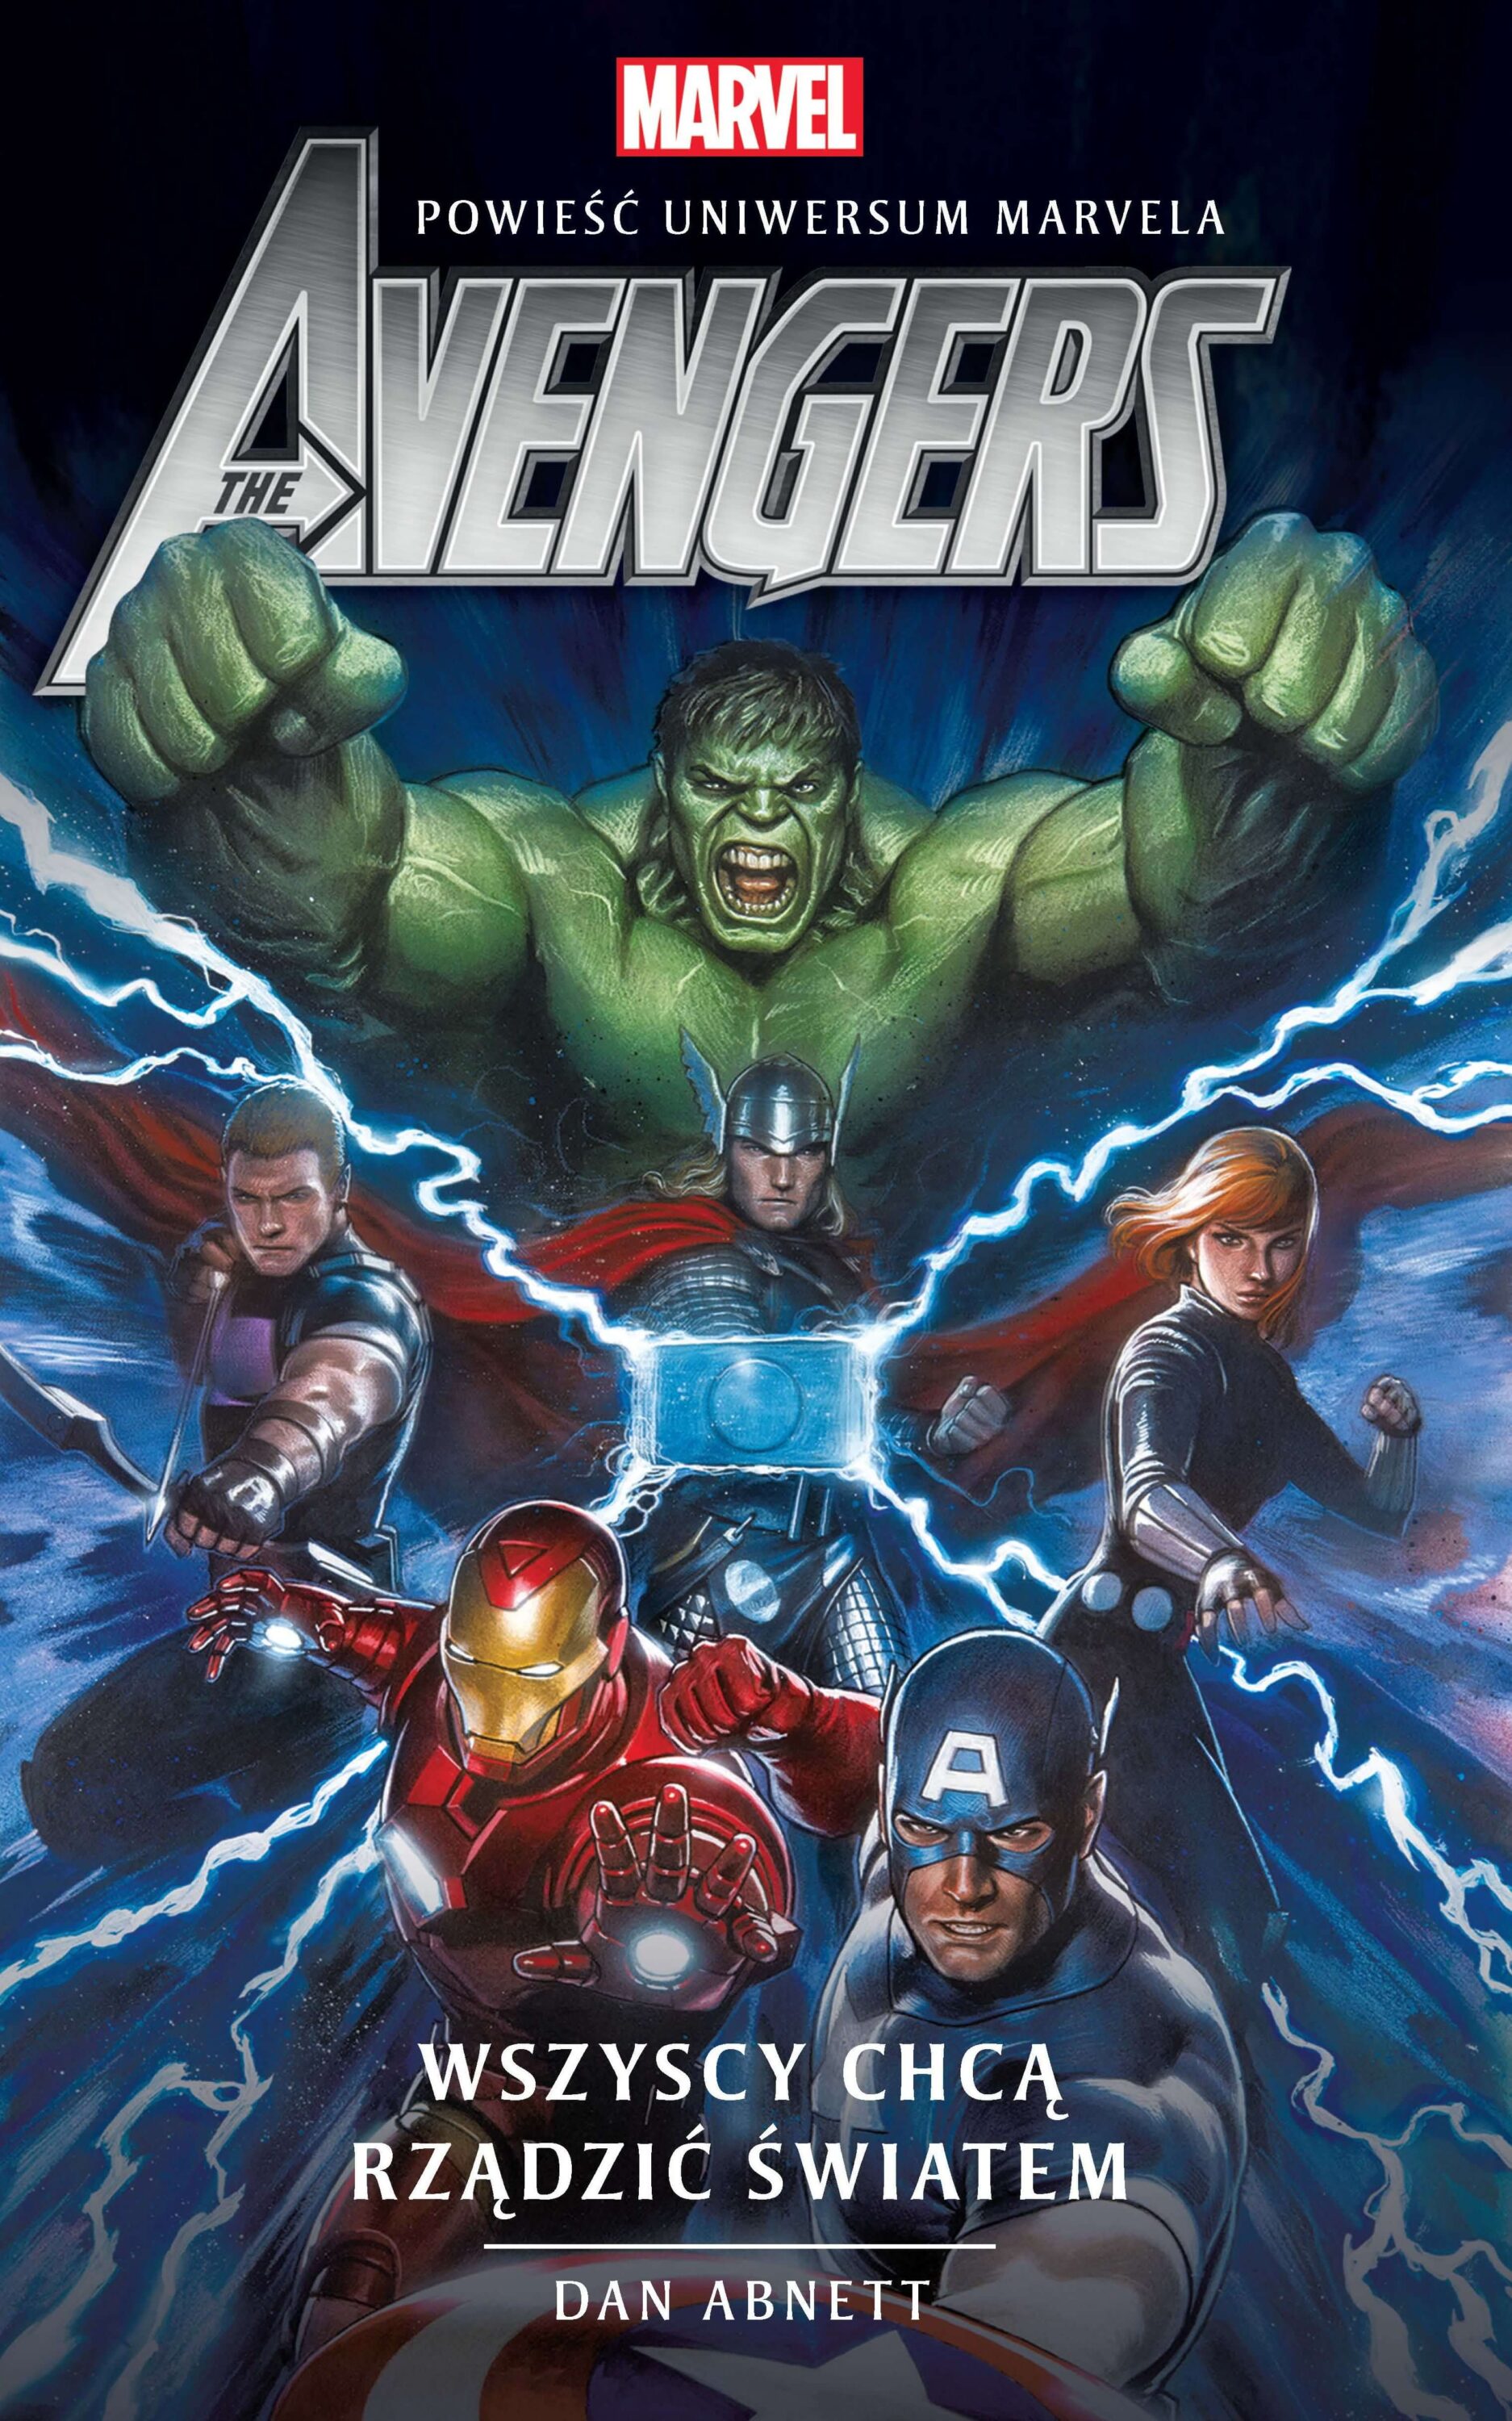 Potężni Avengersi mierzą się ze swoimi największymi wrogami – wszystkimi naraz!